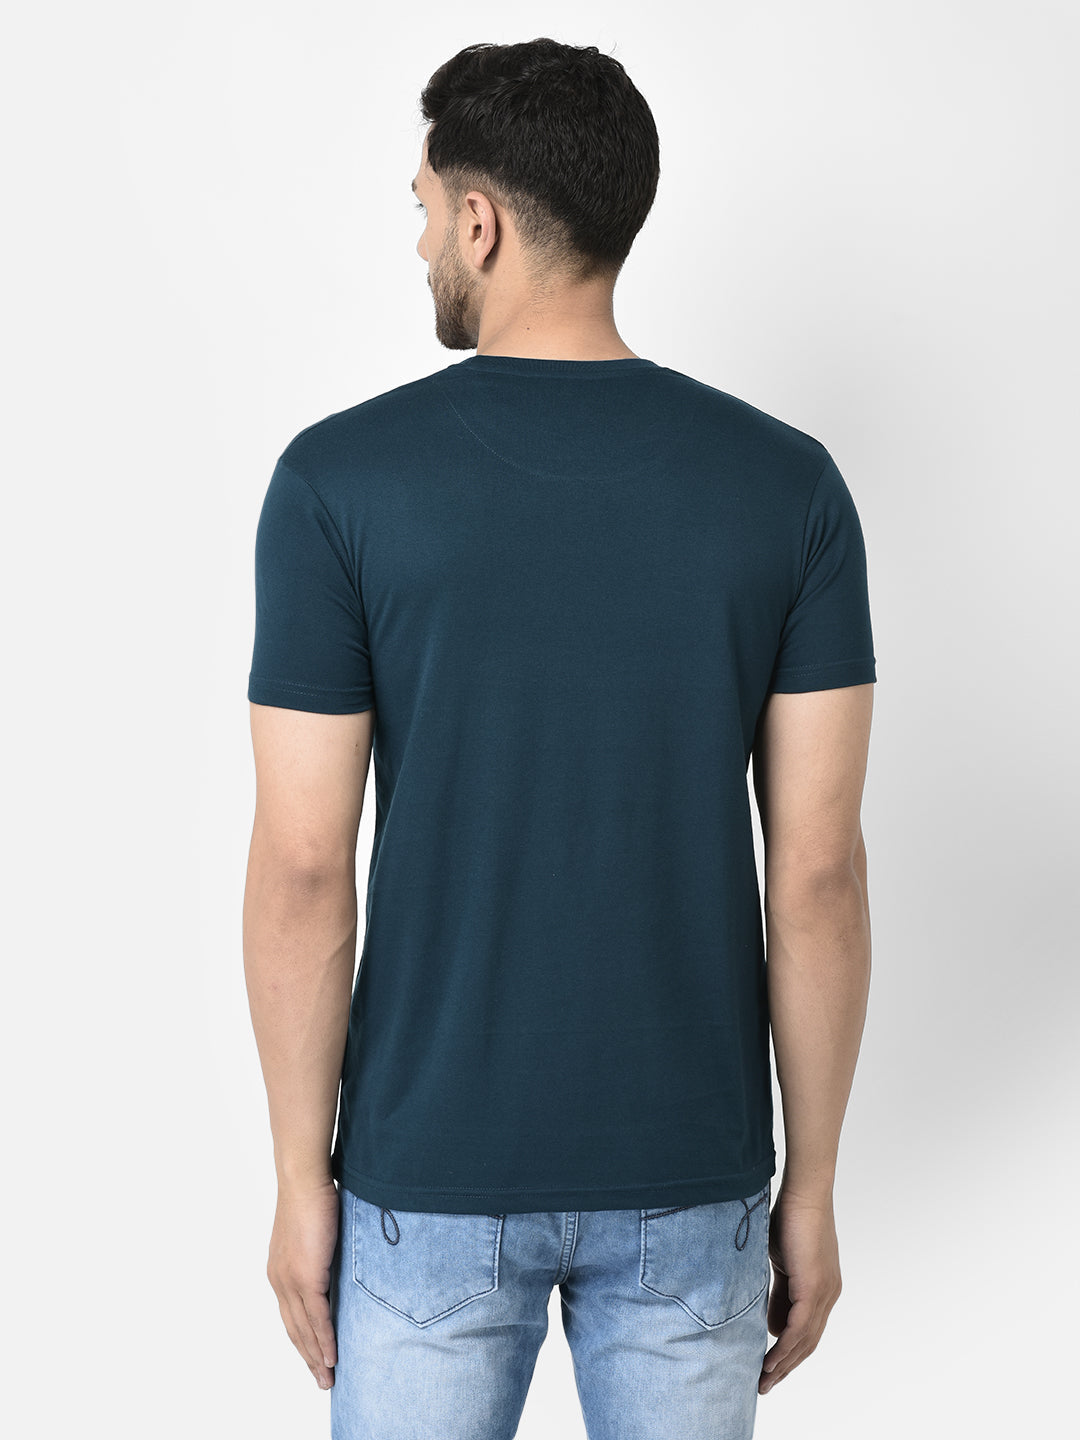 Cobb Teal Printed Regular Fit T-Shirt